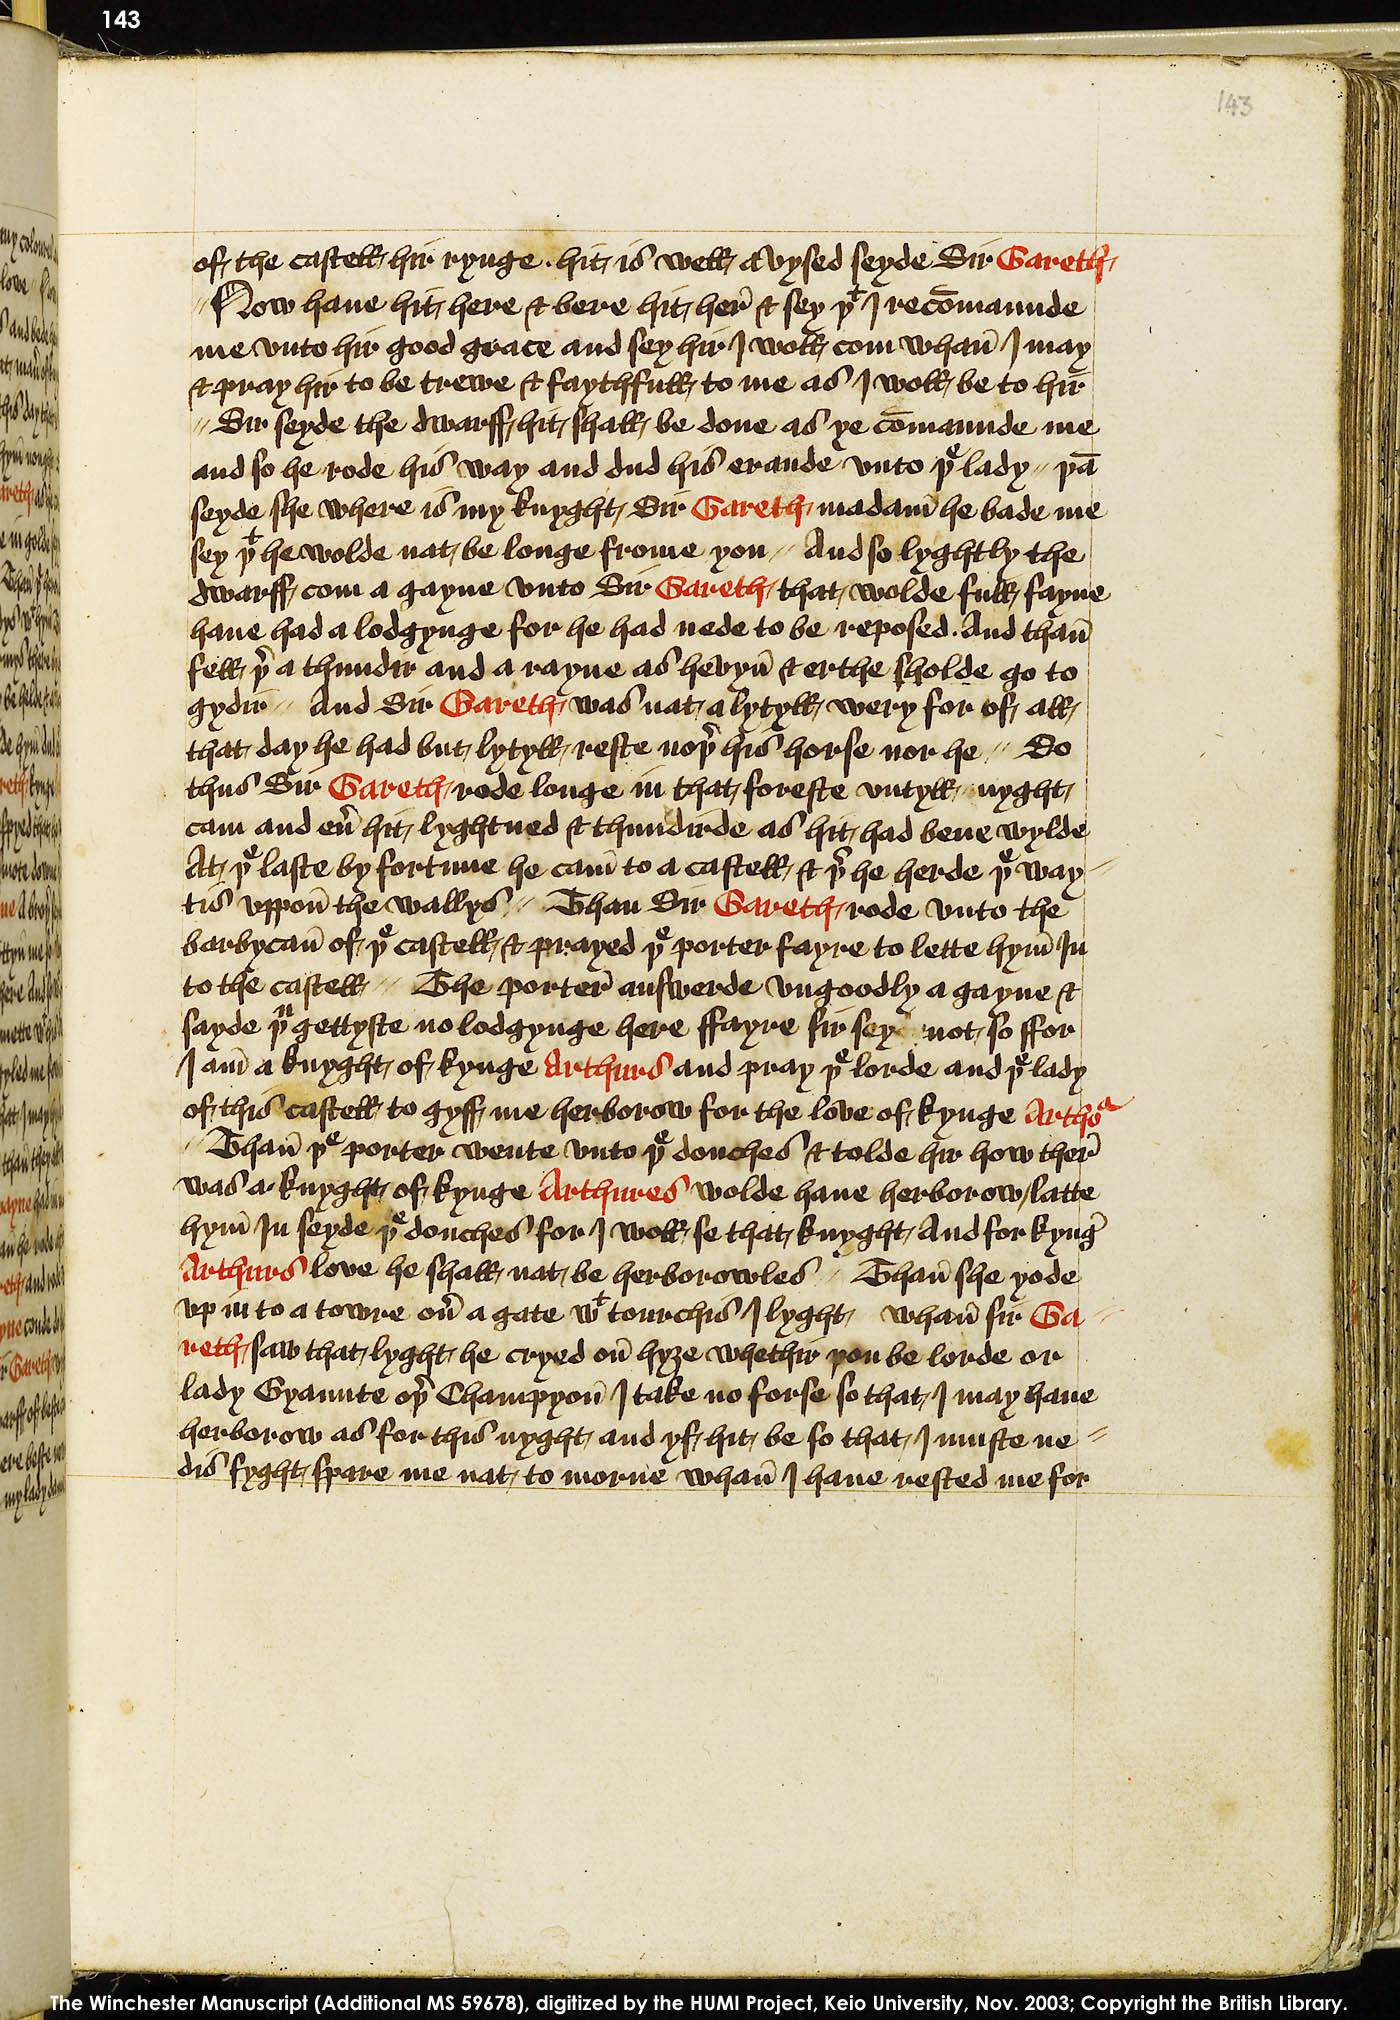 Folio 143r